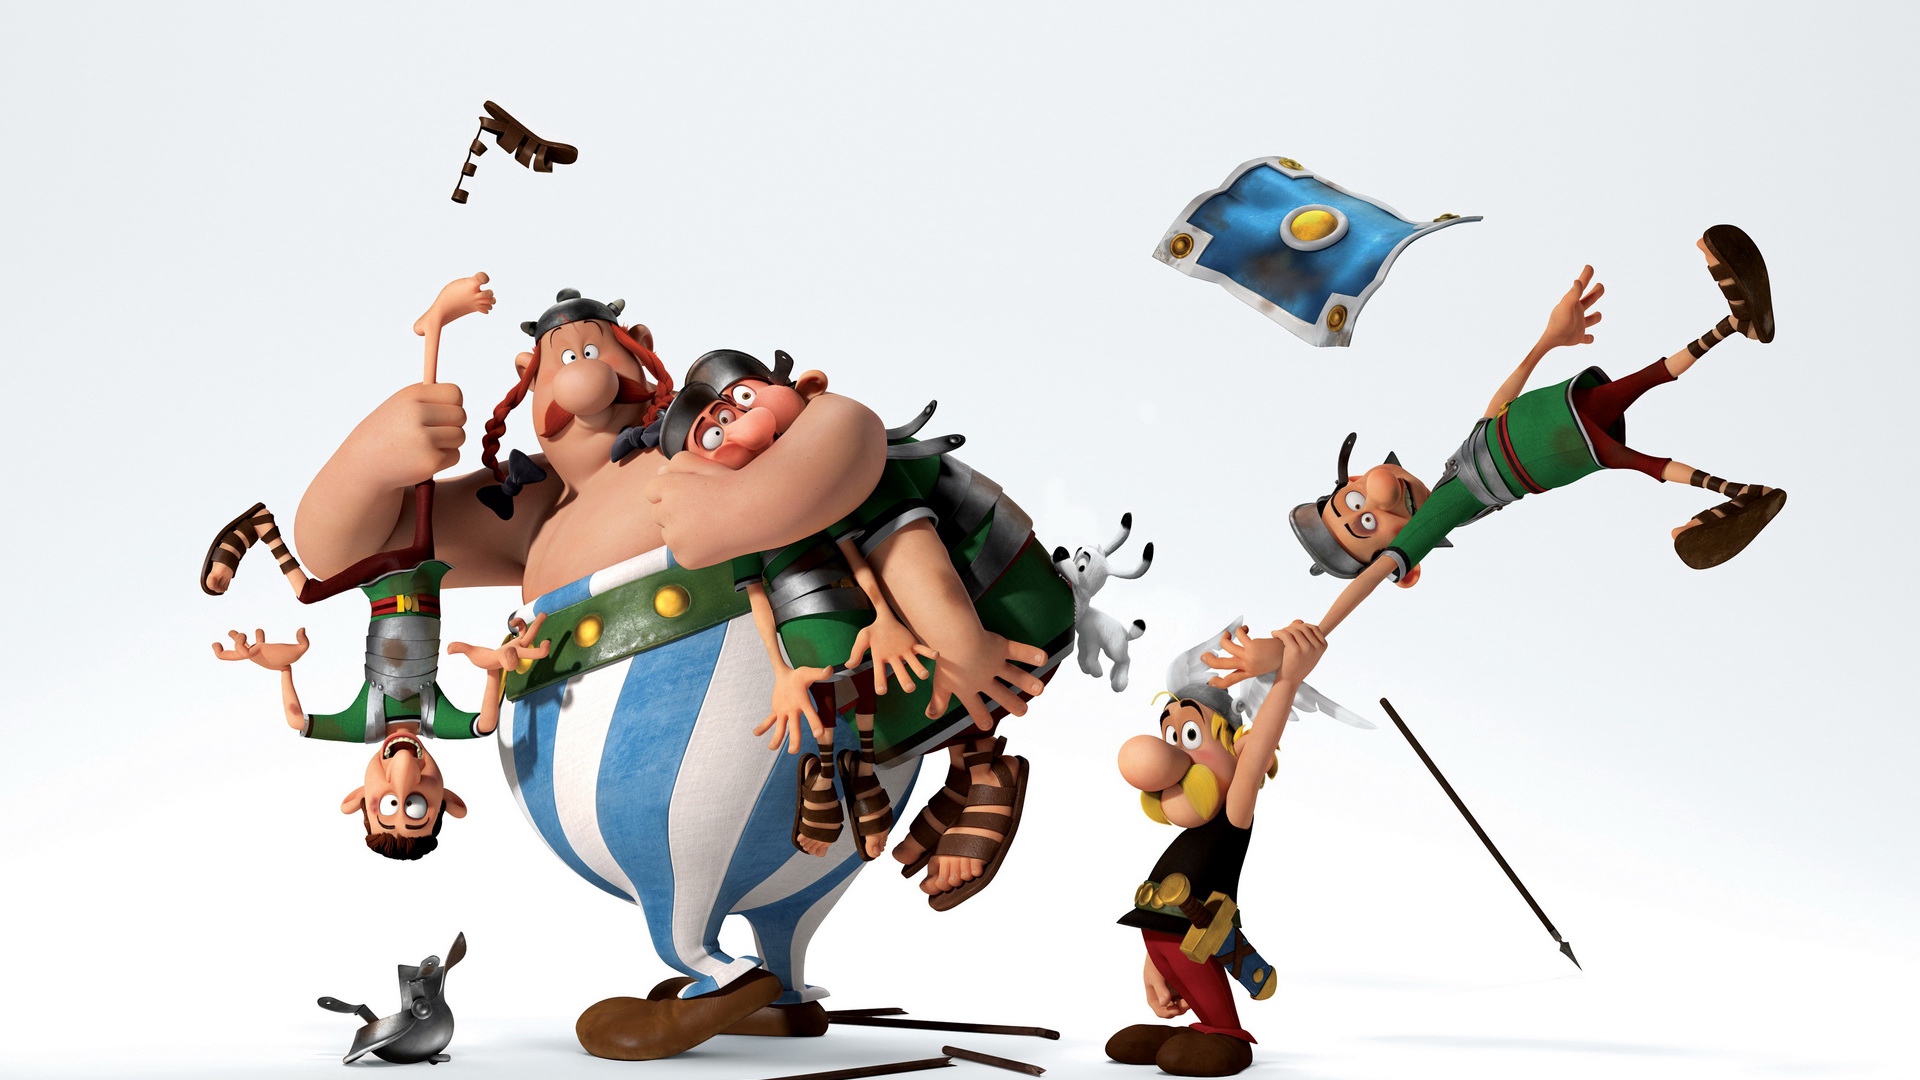 download wallpaper: Asterix & Obelix wallpaper